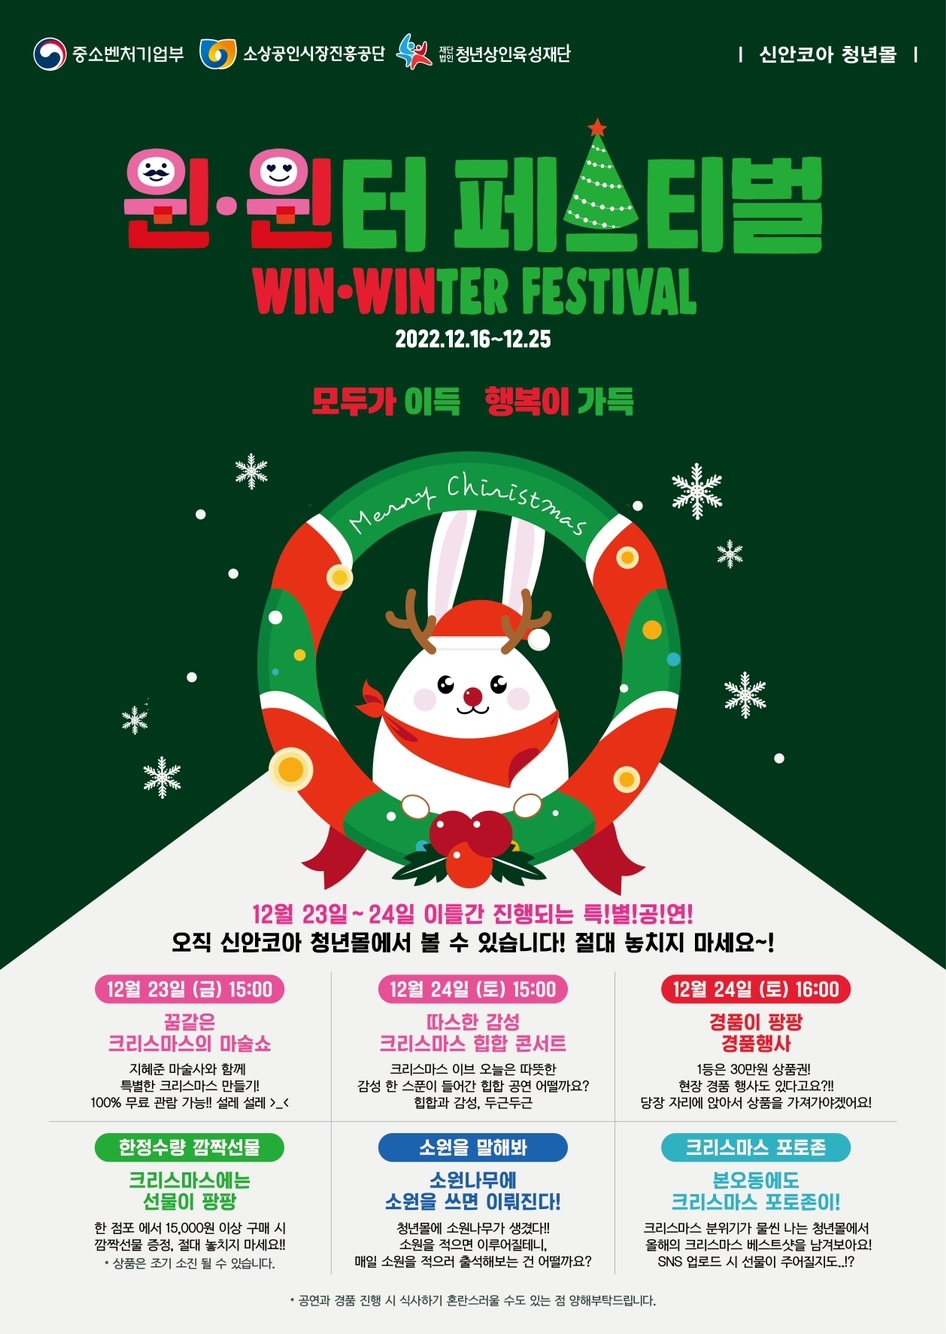 올해 크리스마스는 안산시 청년몰에서…윈·윈터 페스티벌 개최